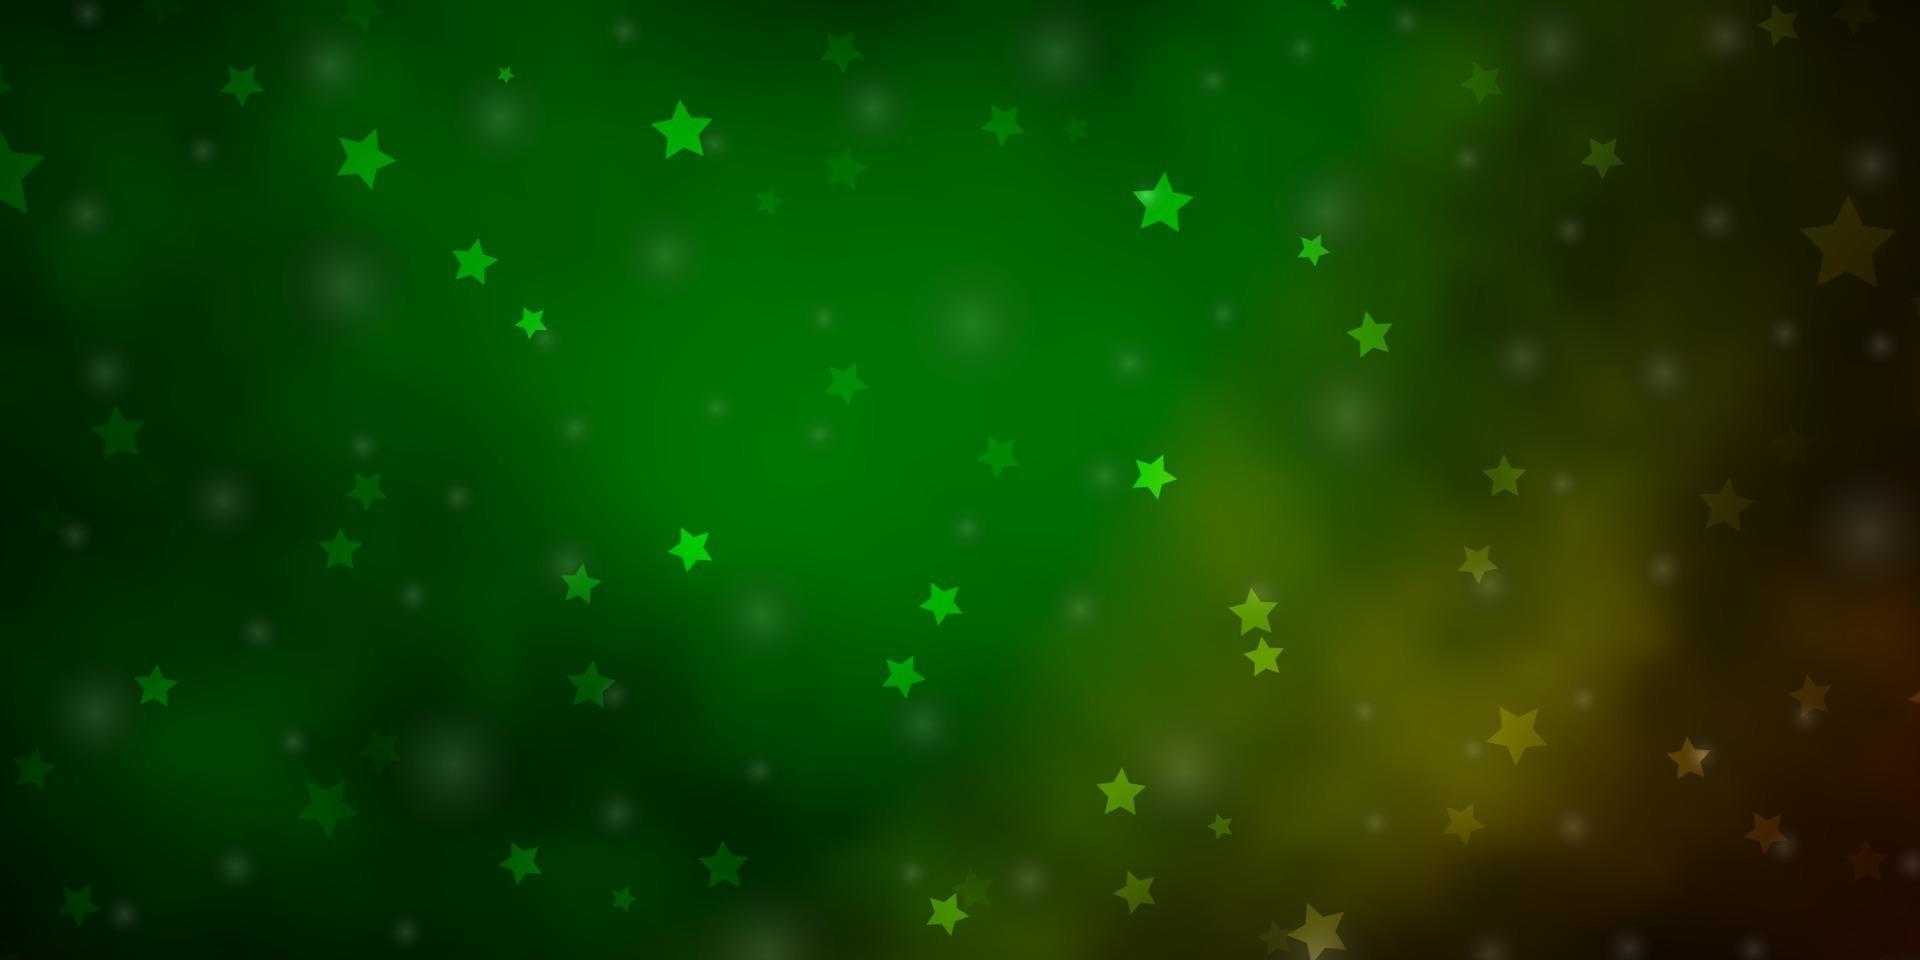 Diseño vectorial verde oscuro con estrellas brillantes. vector